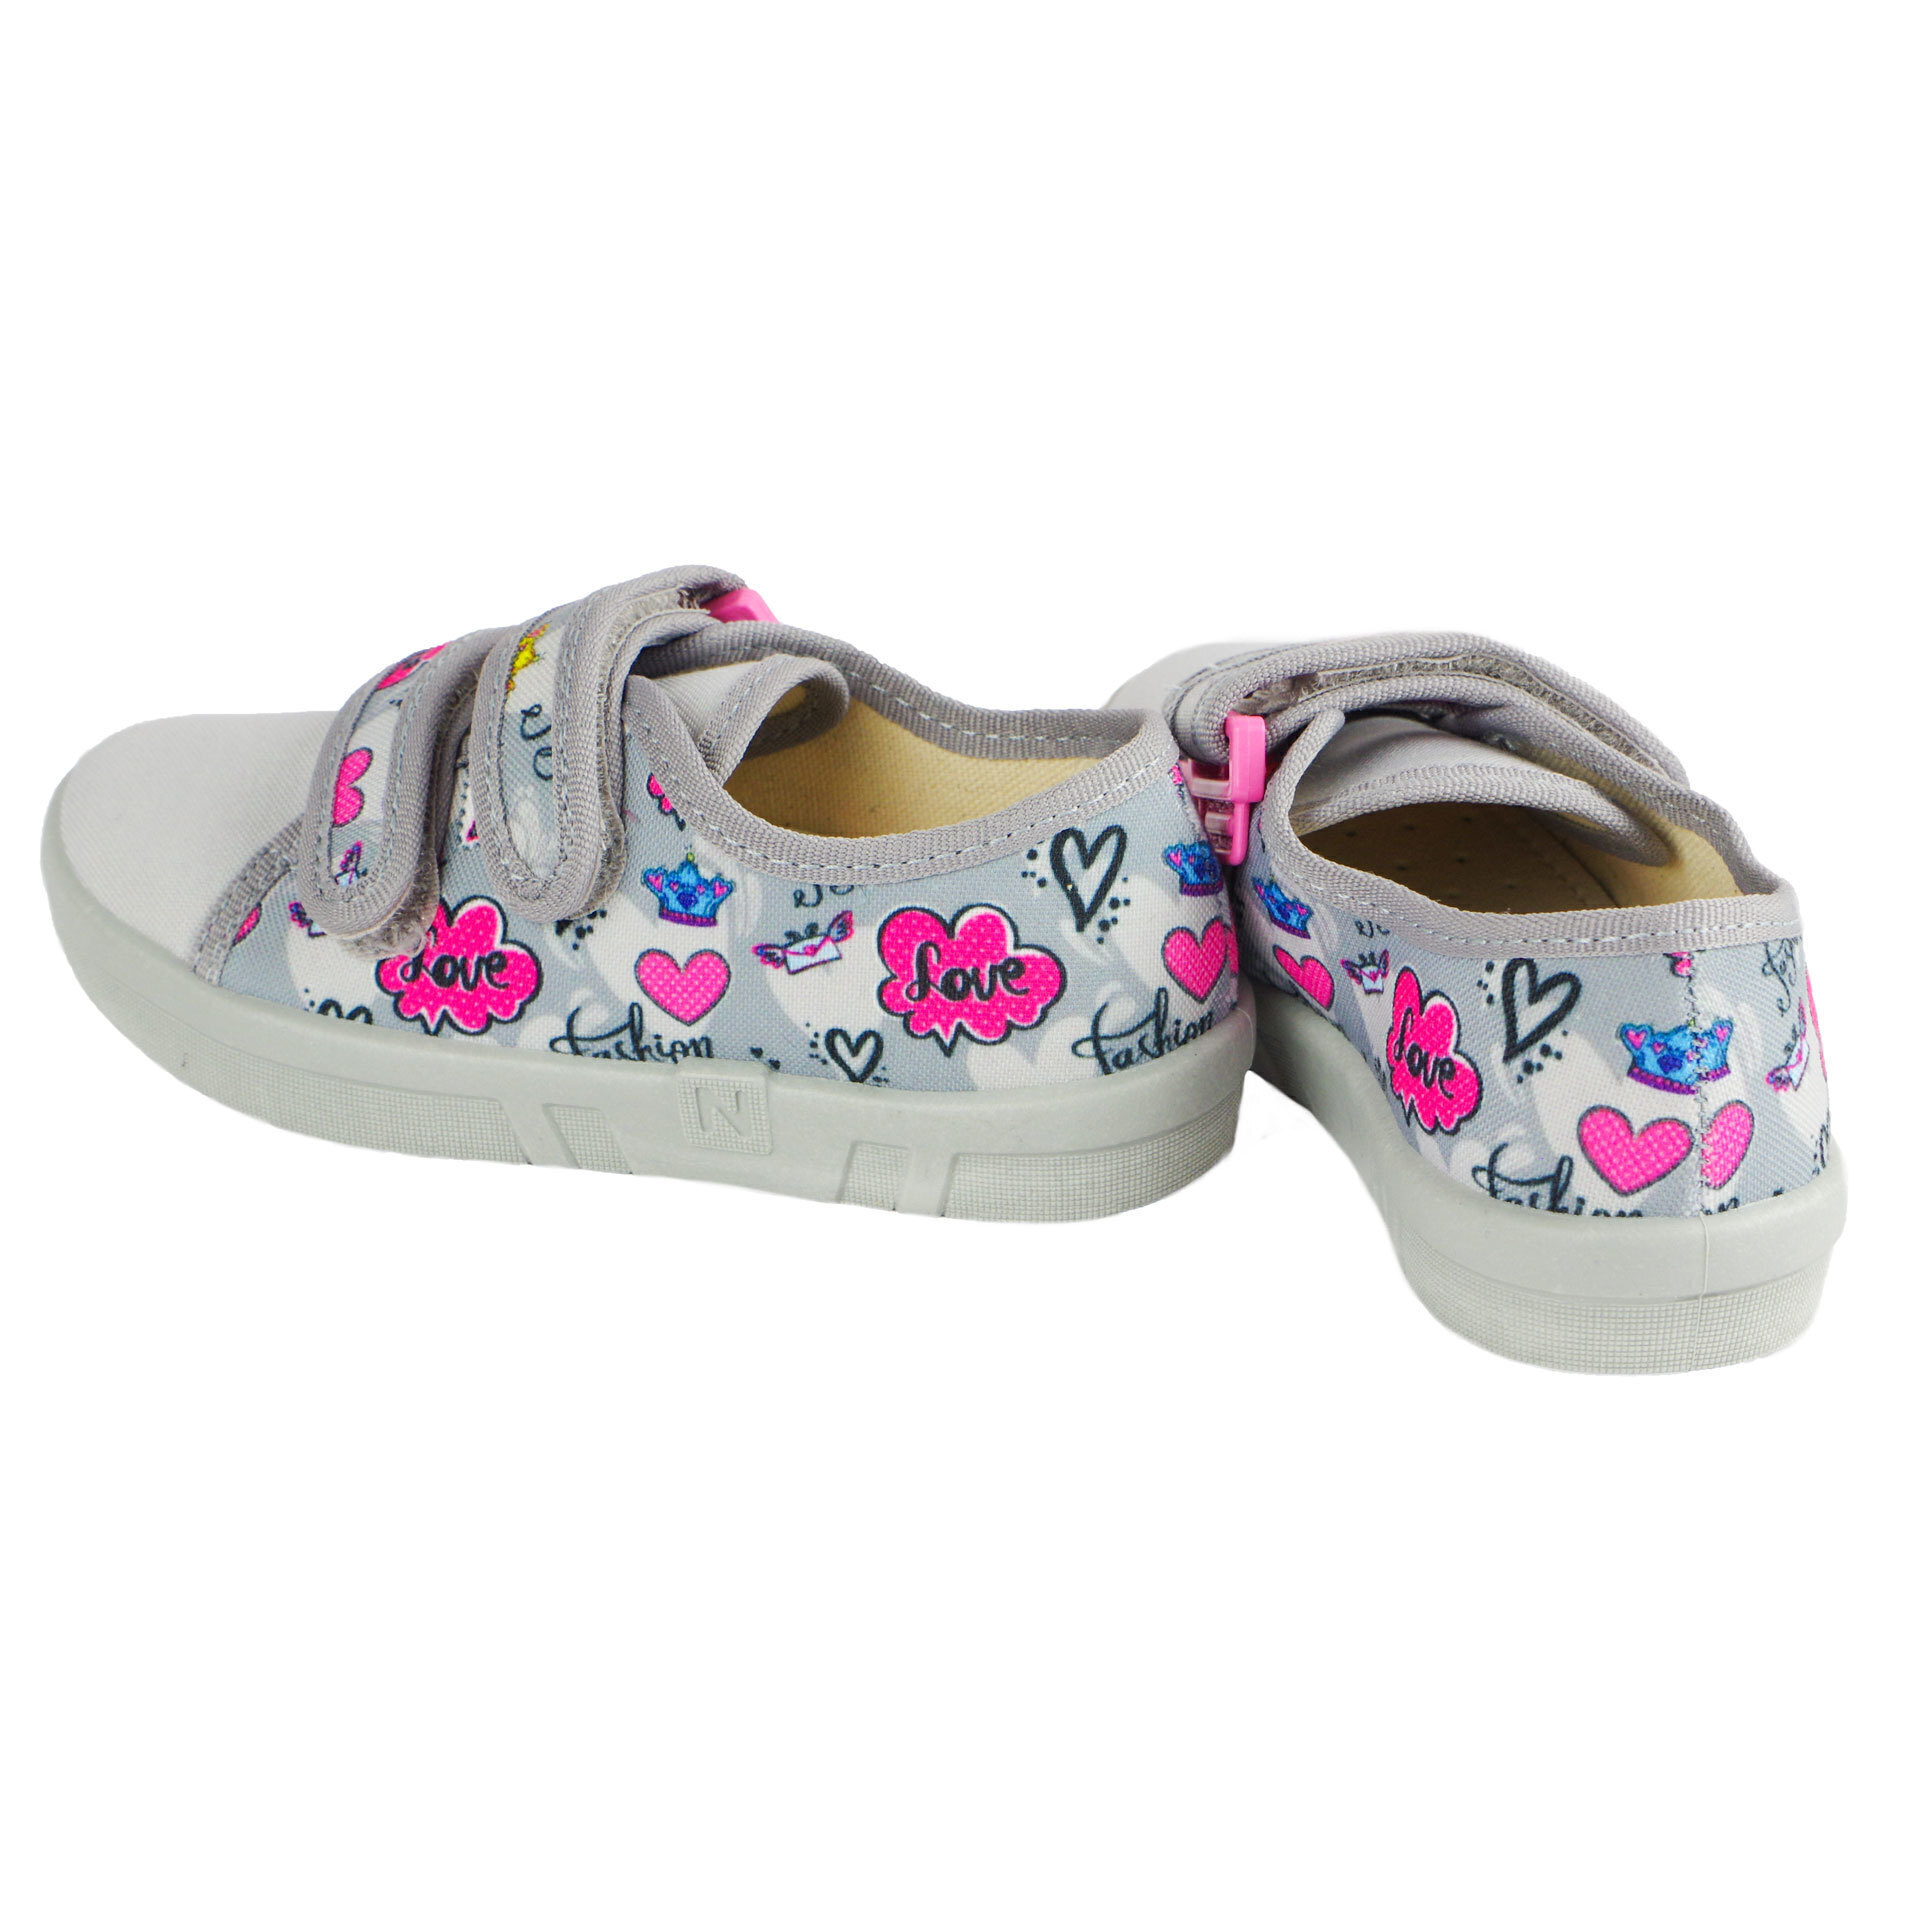 Текстильная обувь для девочек Тапочки Ellis (1988) цвет Серый 26-32 размеры – Sole Kids. Фото 2